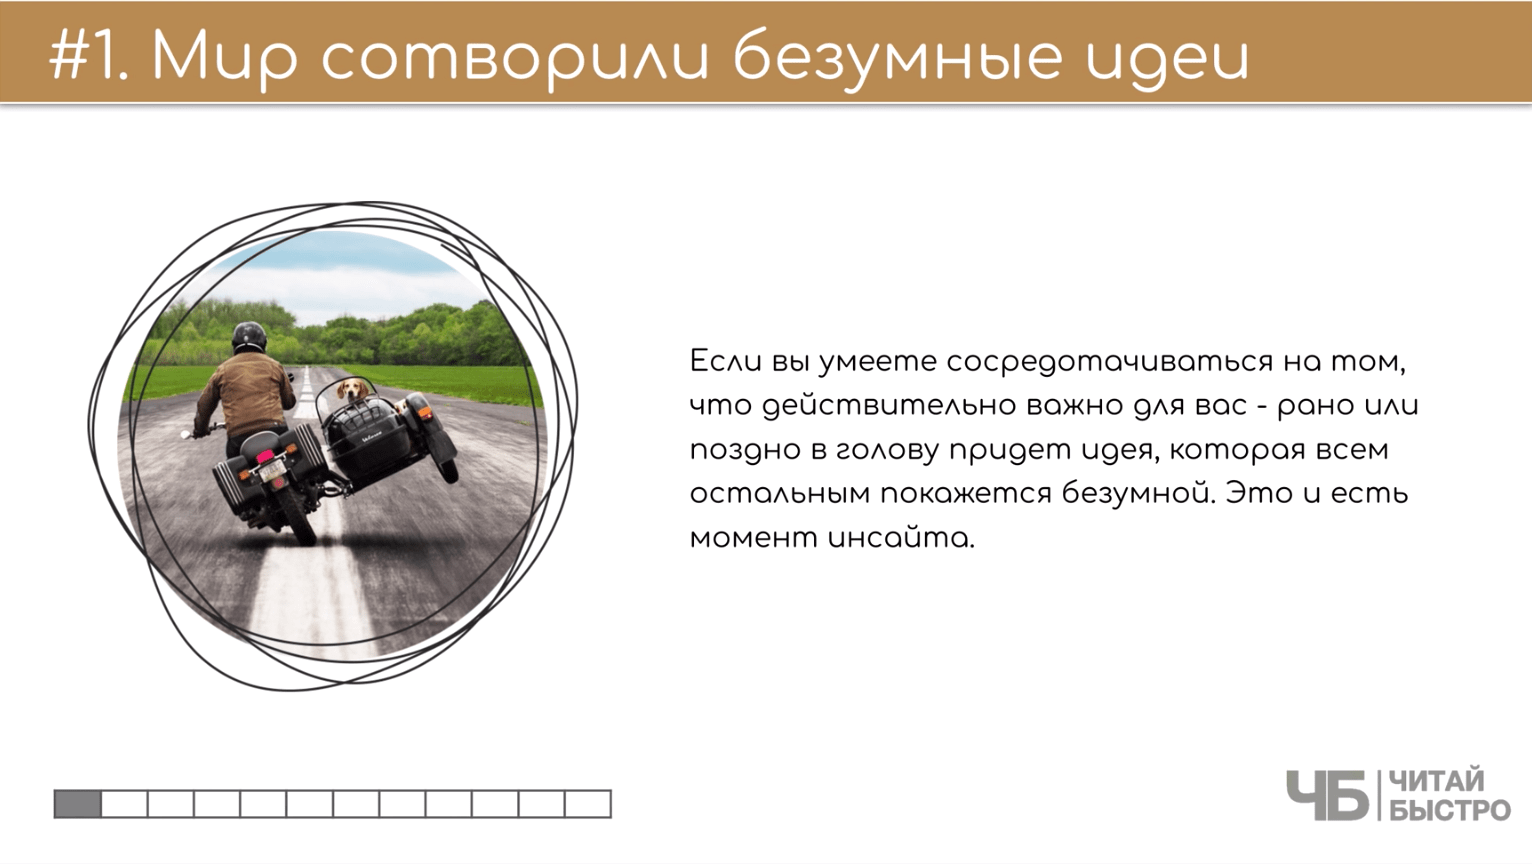 На этом слайде изображен тезис о том, что мир сотворили безумные идеи и иллюстрация мужчины на мотоцикле.